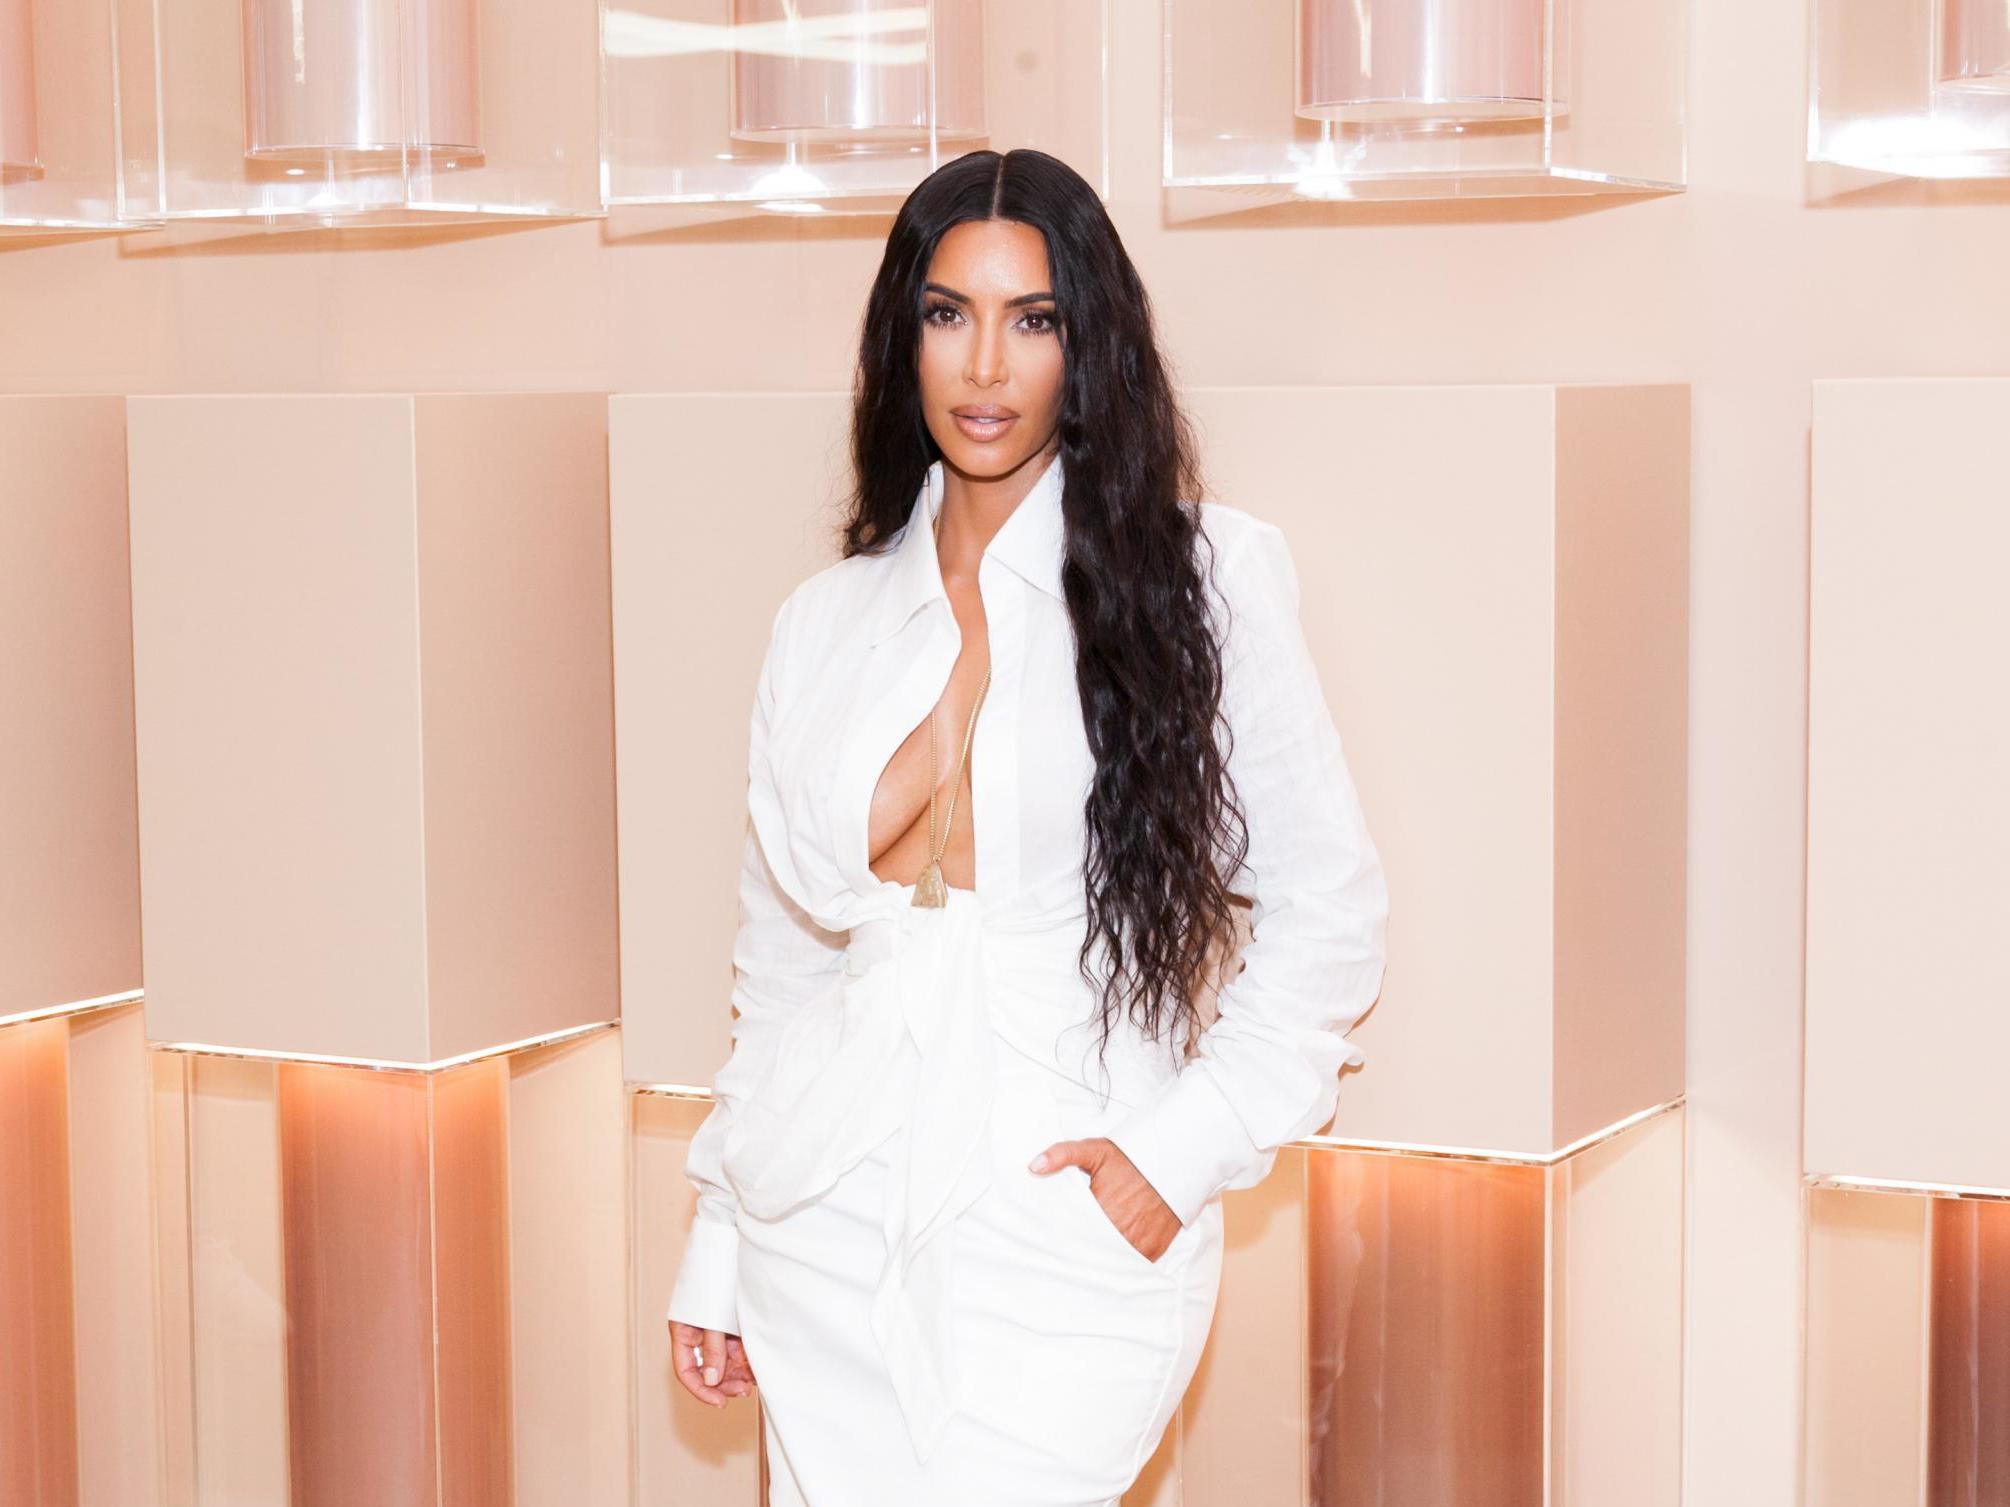 968px x 681px - Kim Kardashian West reveals paparazzi once tried to upskirt ...